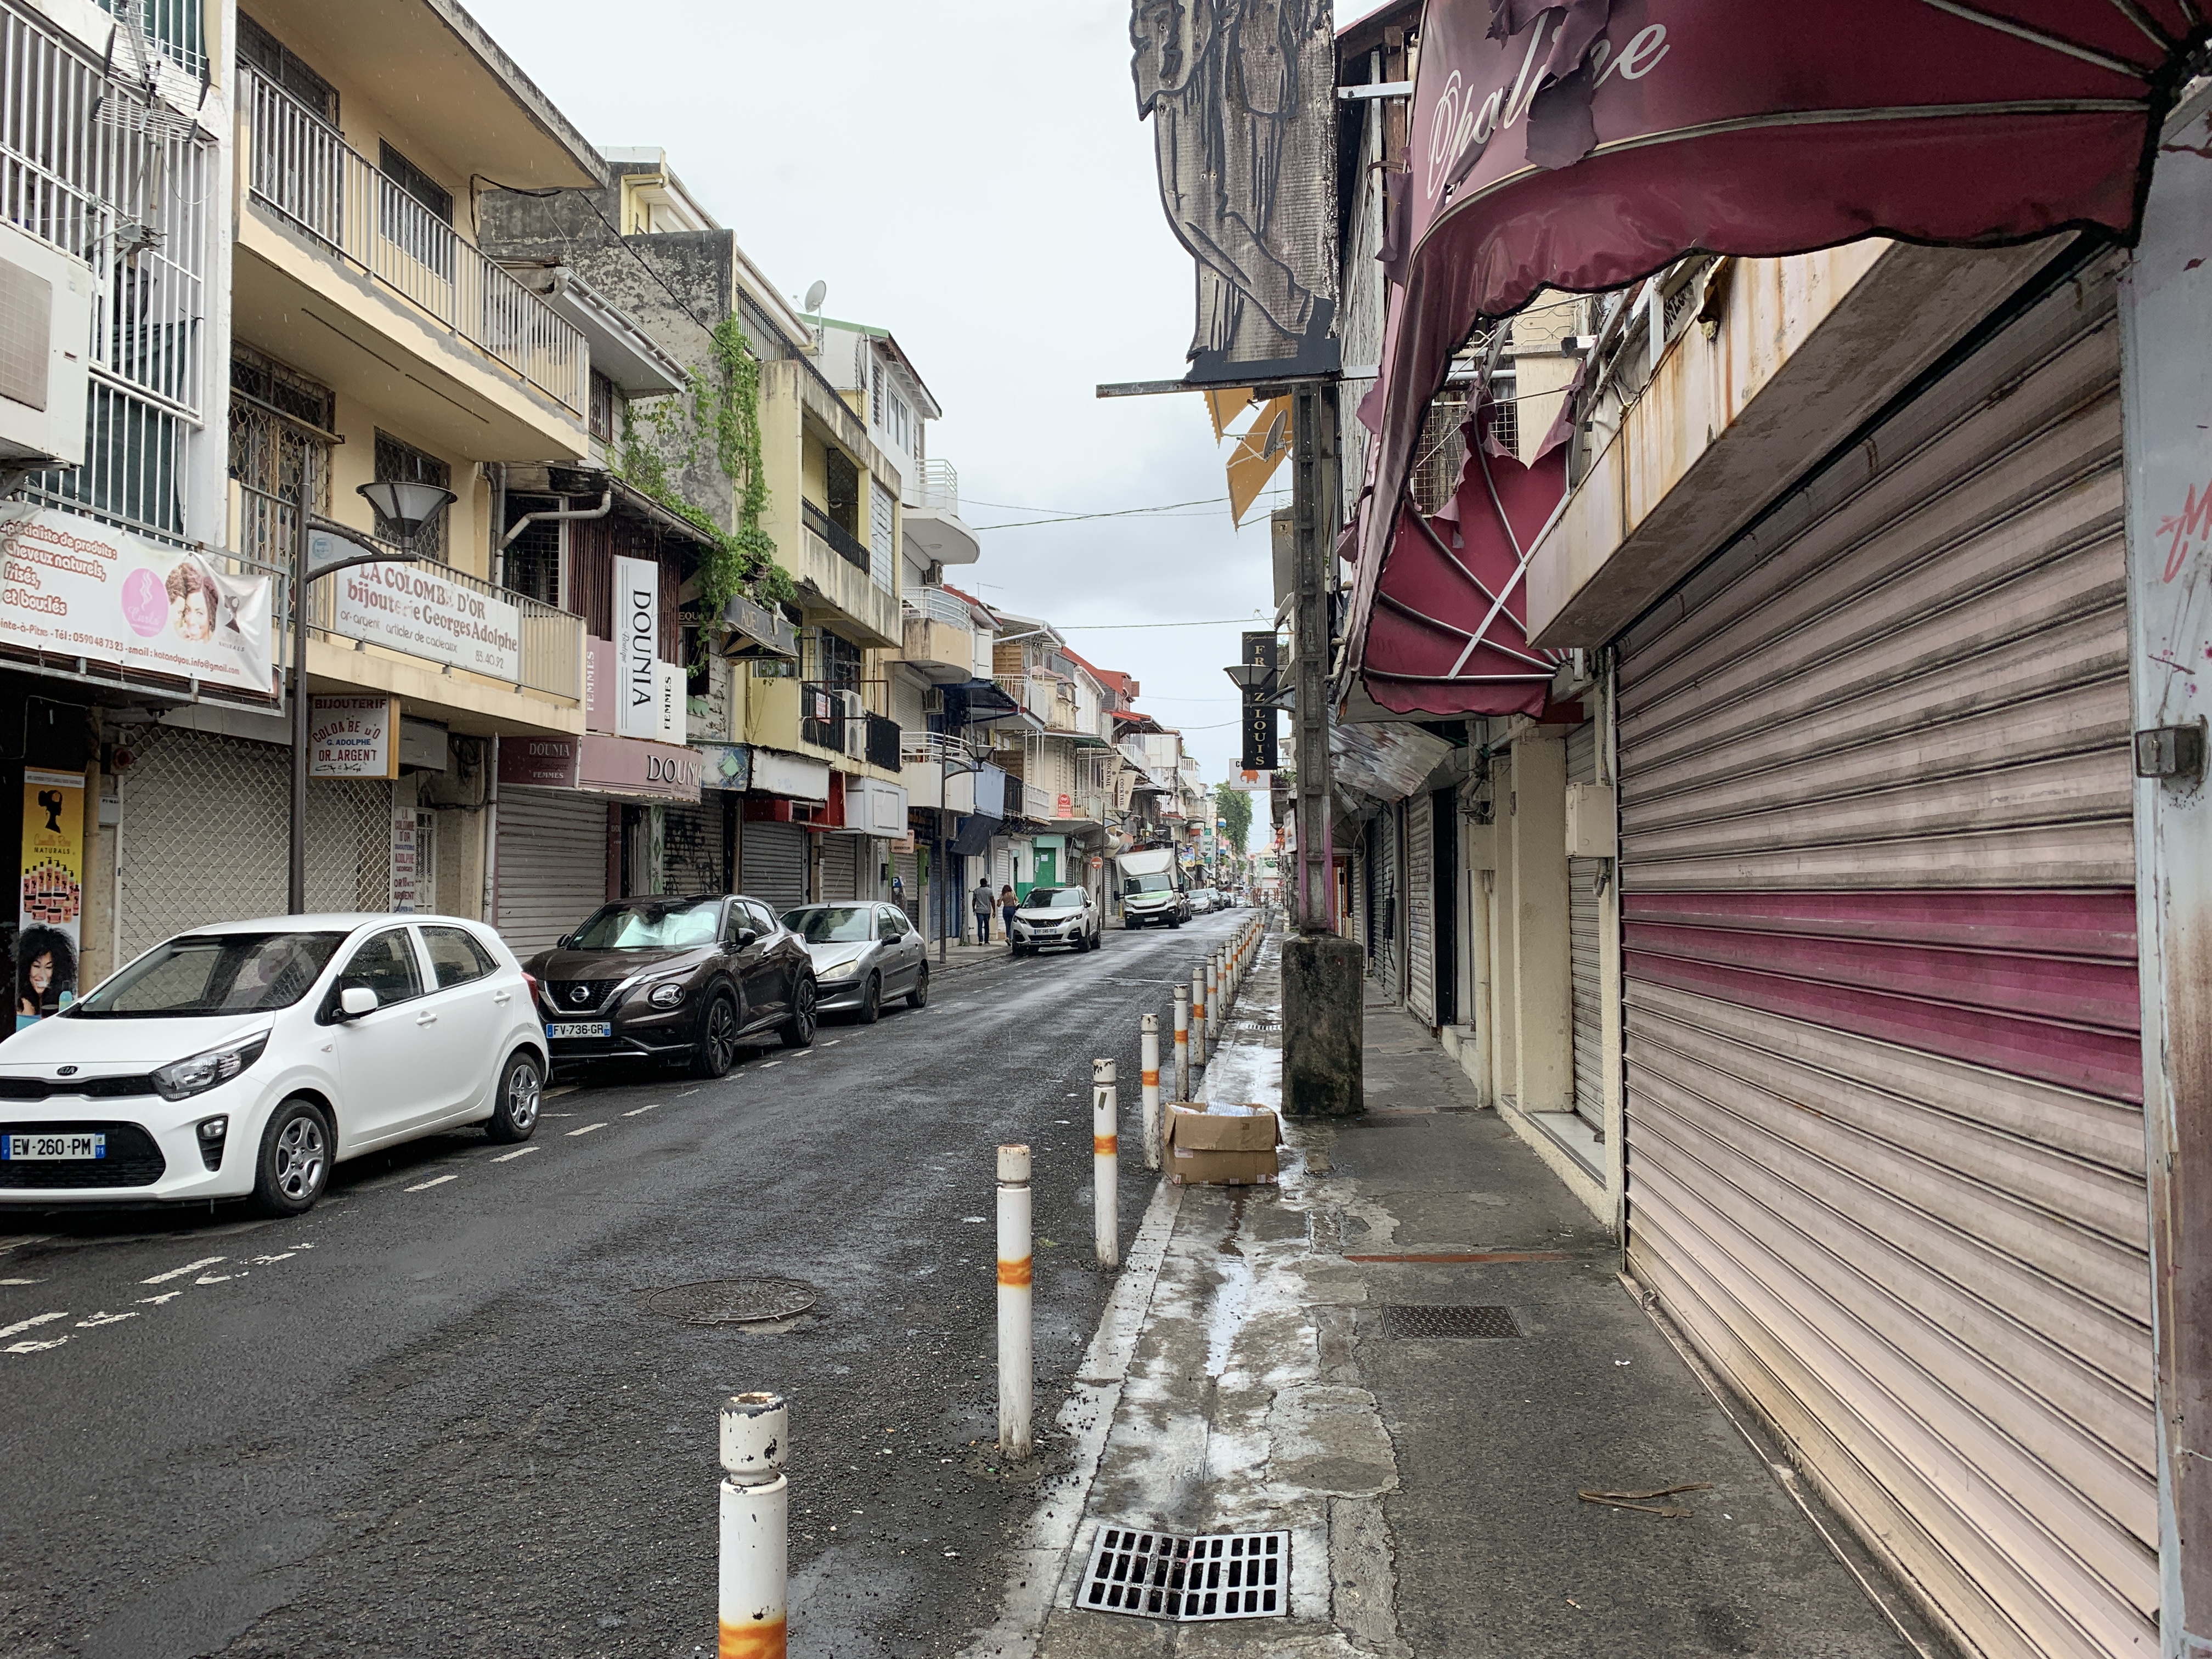     Règle des 5km, commerces fermés... Première journée de confinement renforcé en Guadeloupe

